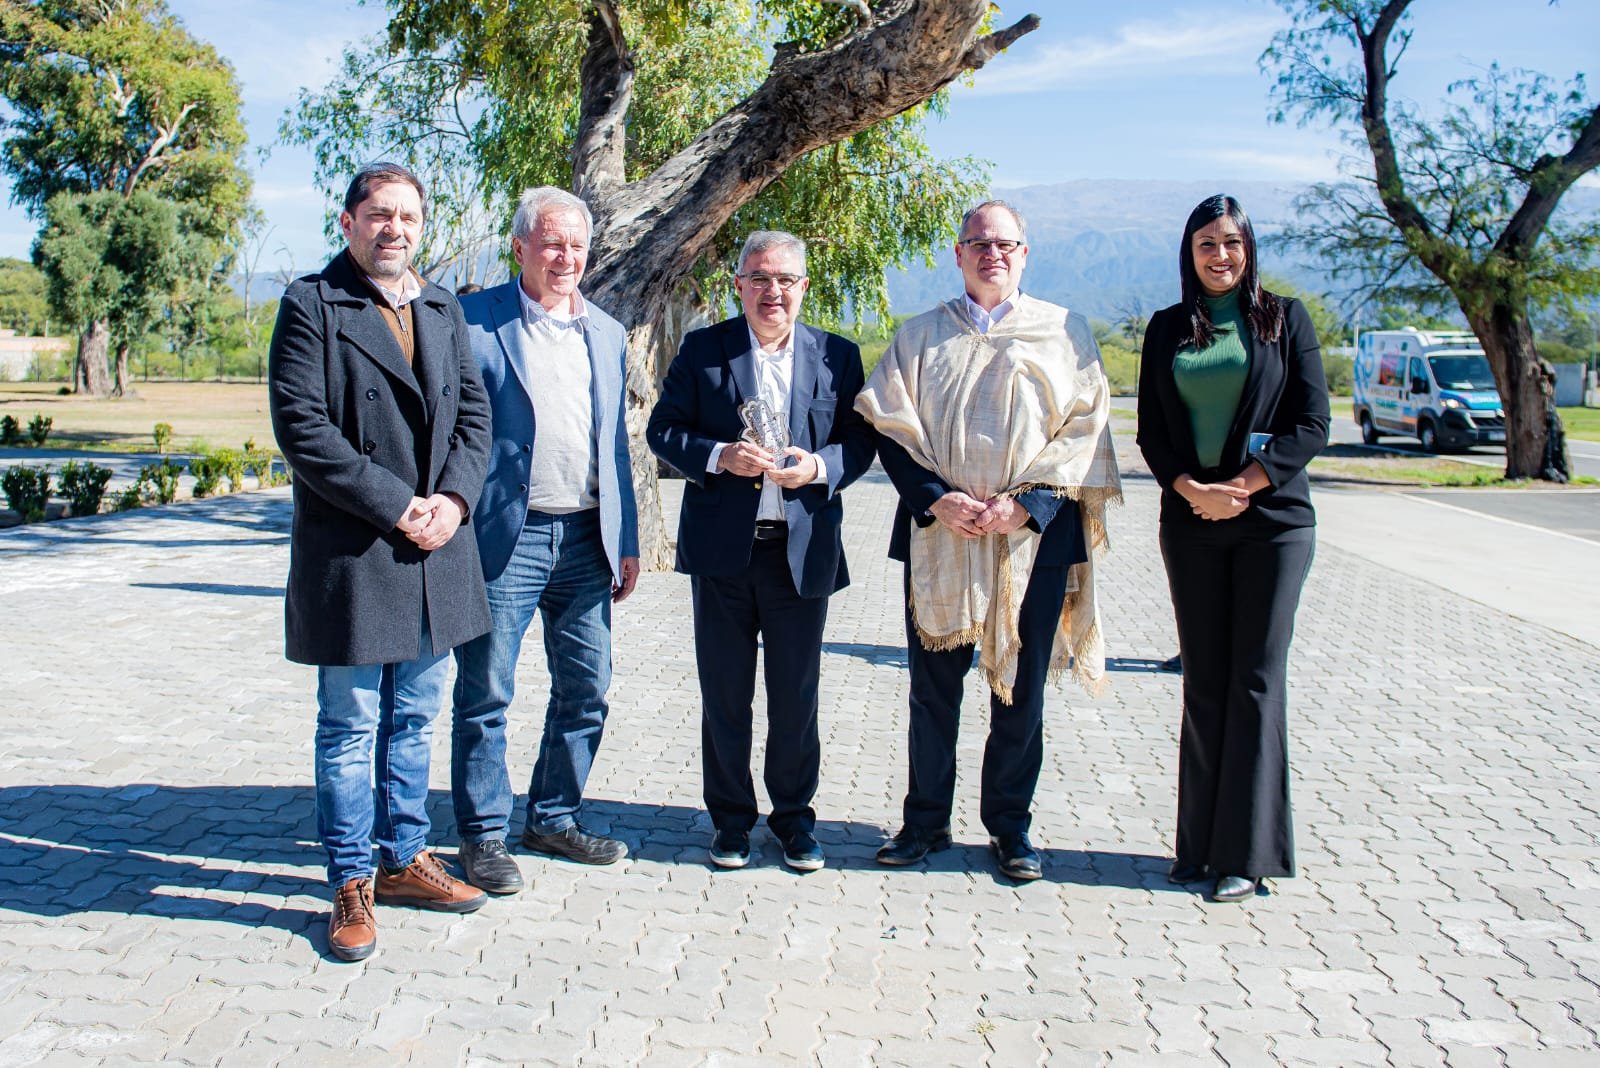 El Embajador de Israel llegó a Catamarca para impulsar proyectos conjuntos de agua, tecnología y minería